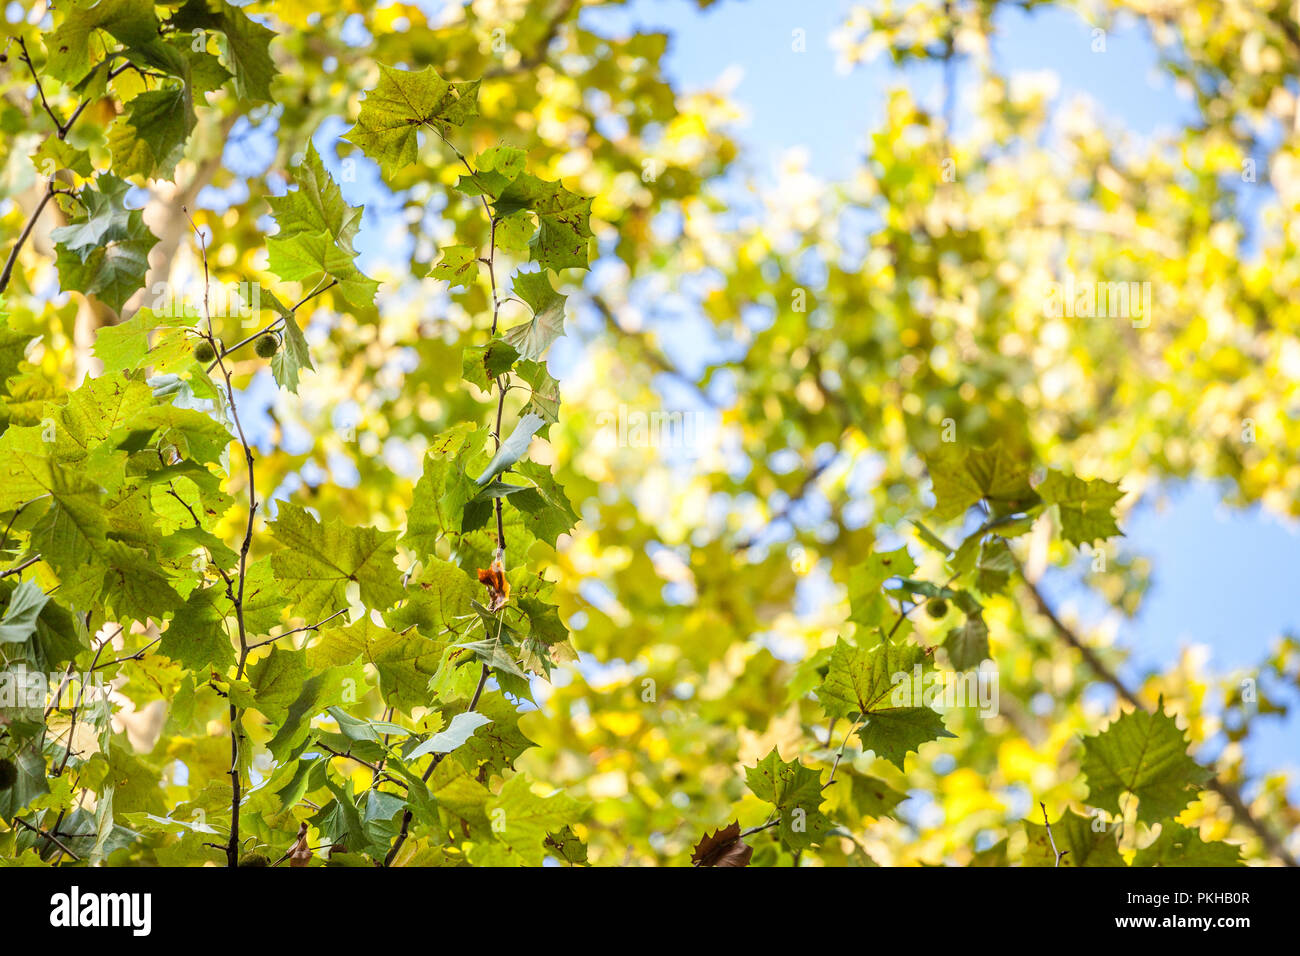 Close up sur un platane avec ses feuilles vertes et jaunes, à l'automne. Également connu sous le platane, Platanus, ou l'arbre est un symbole de l'automne dans le nord de l'il Banque D'Images